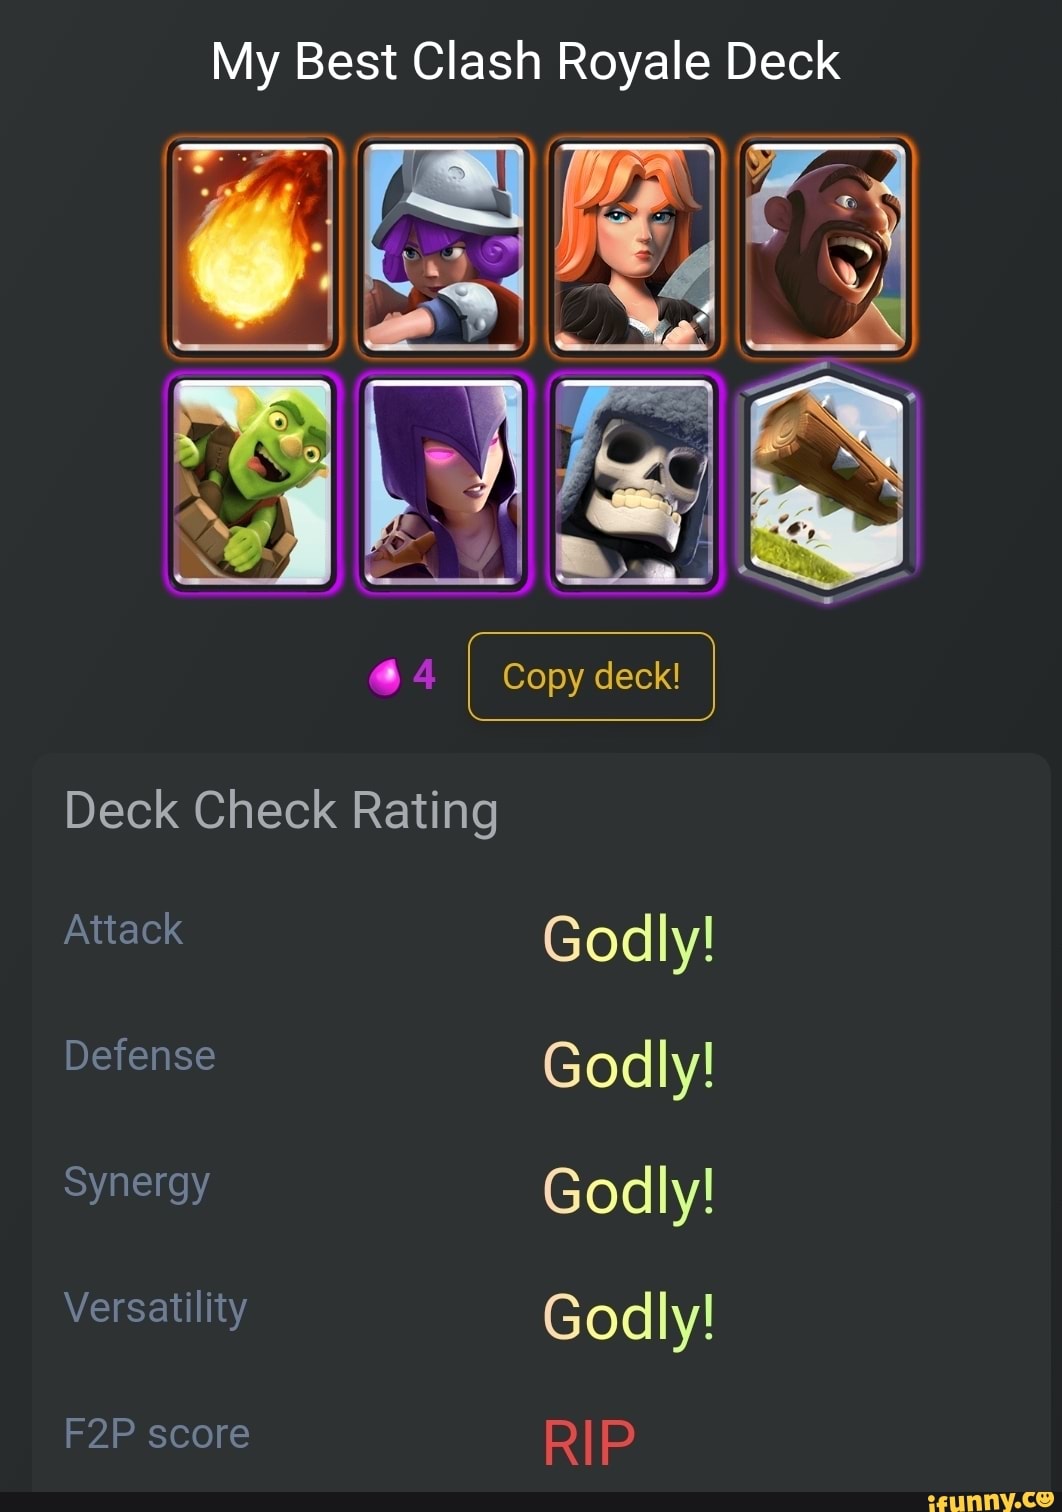 My best clash royale deck